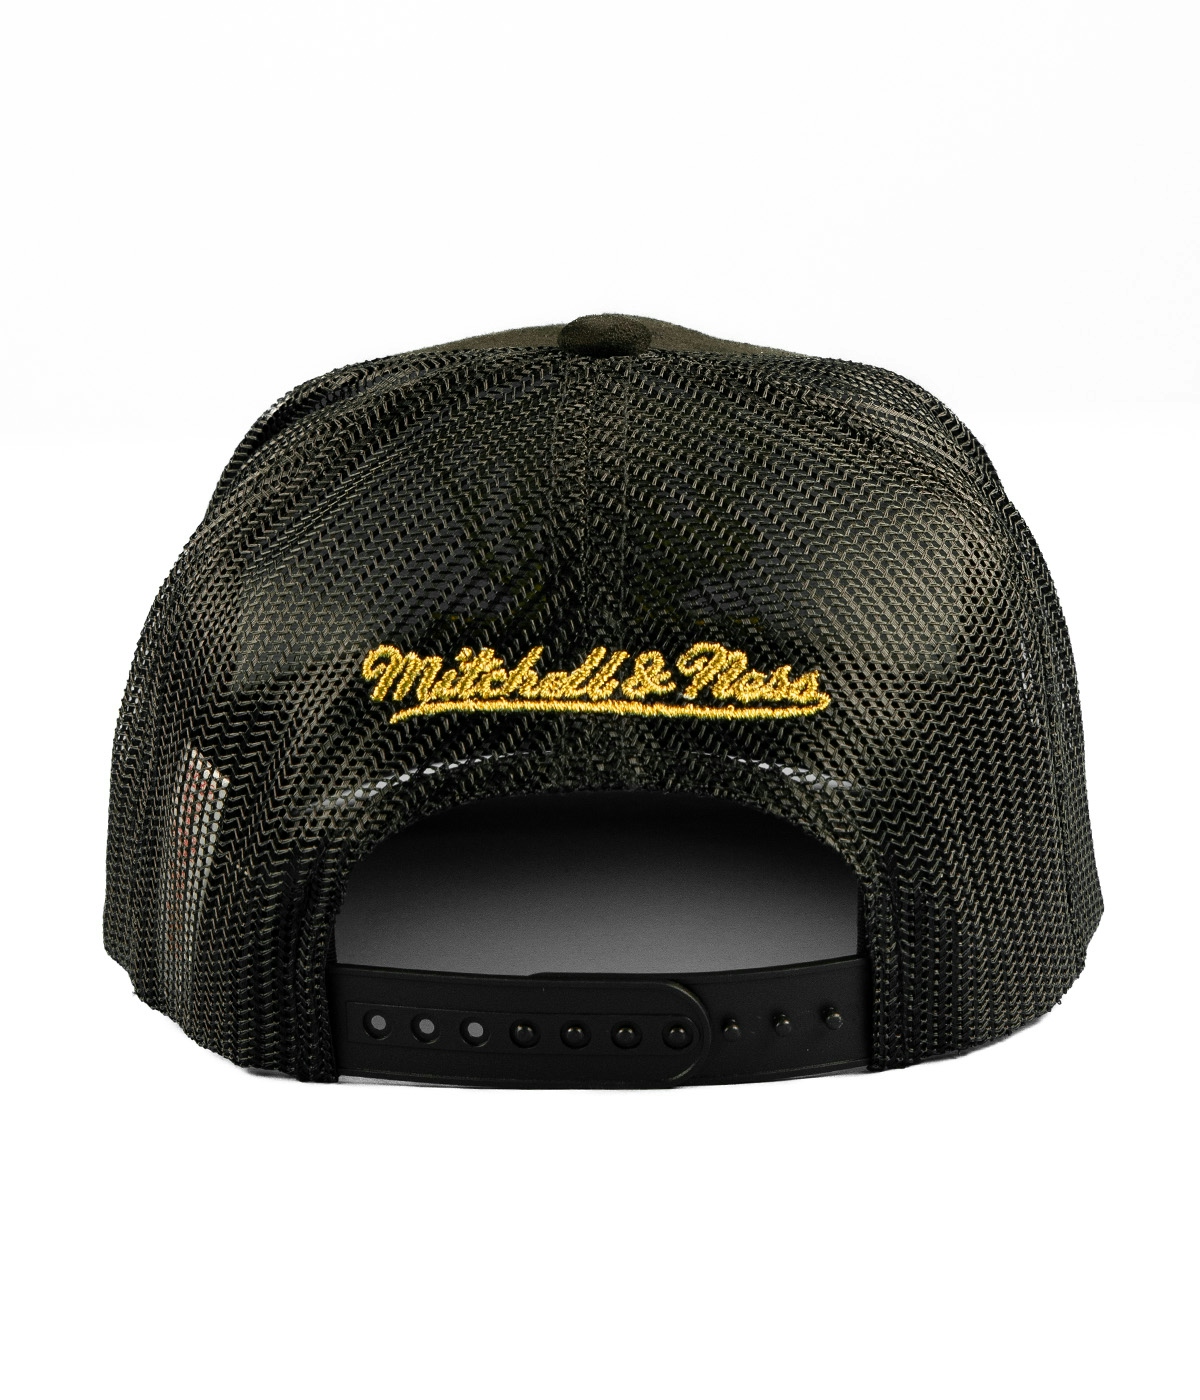 Mitchell & Ness Suede Trucker - Anaheim Ducks Cap Black 2